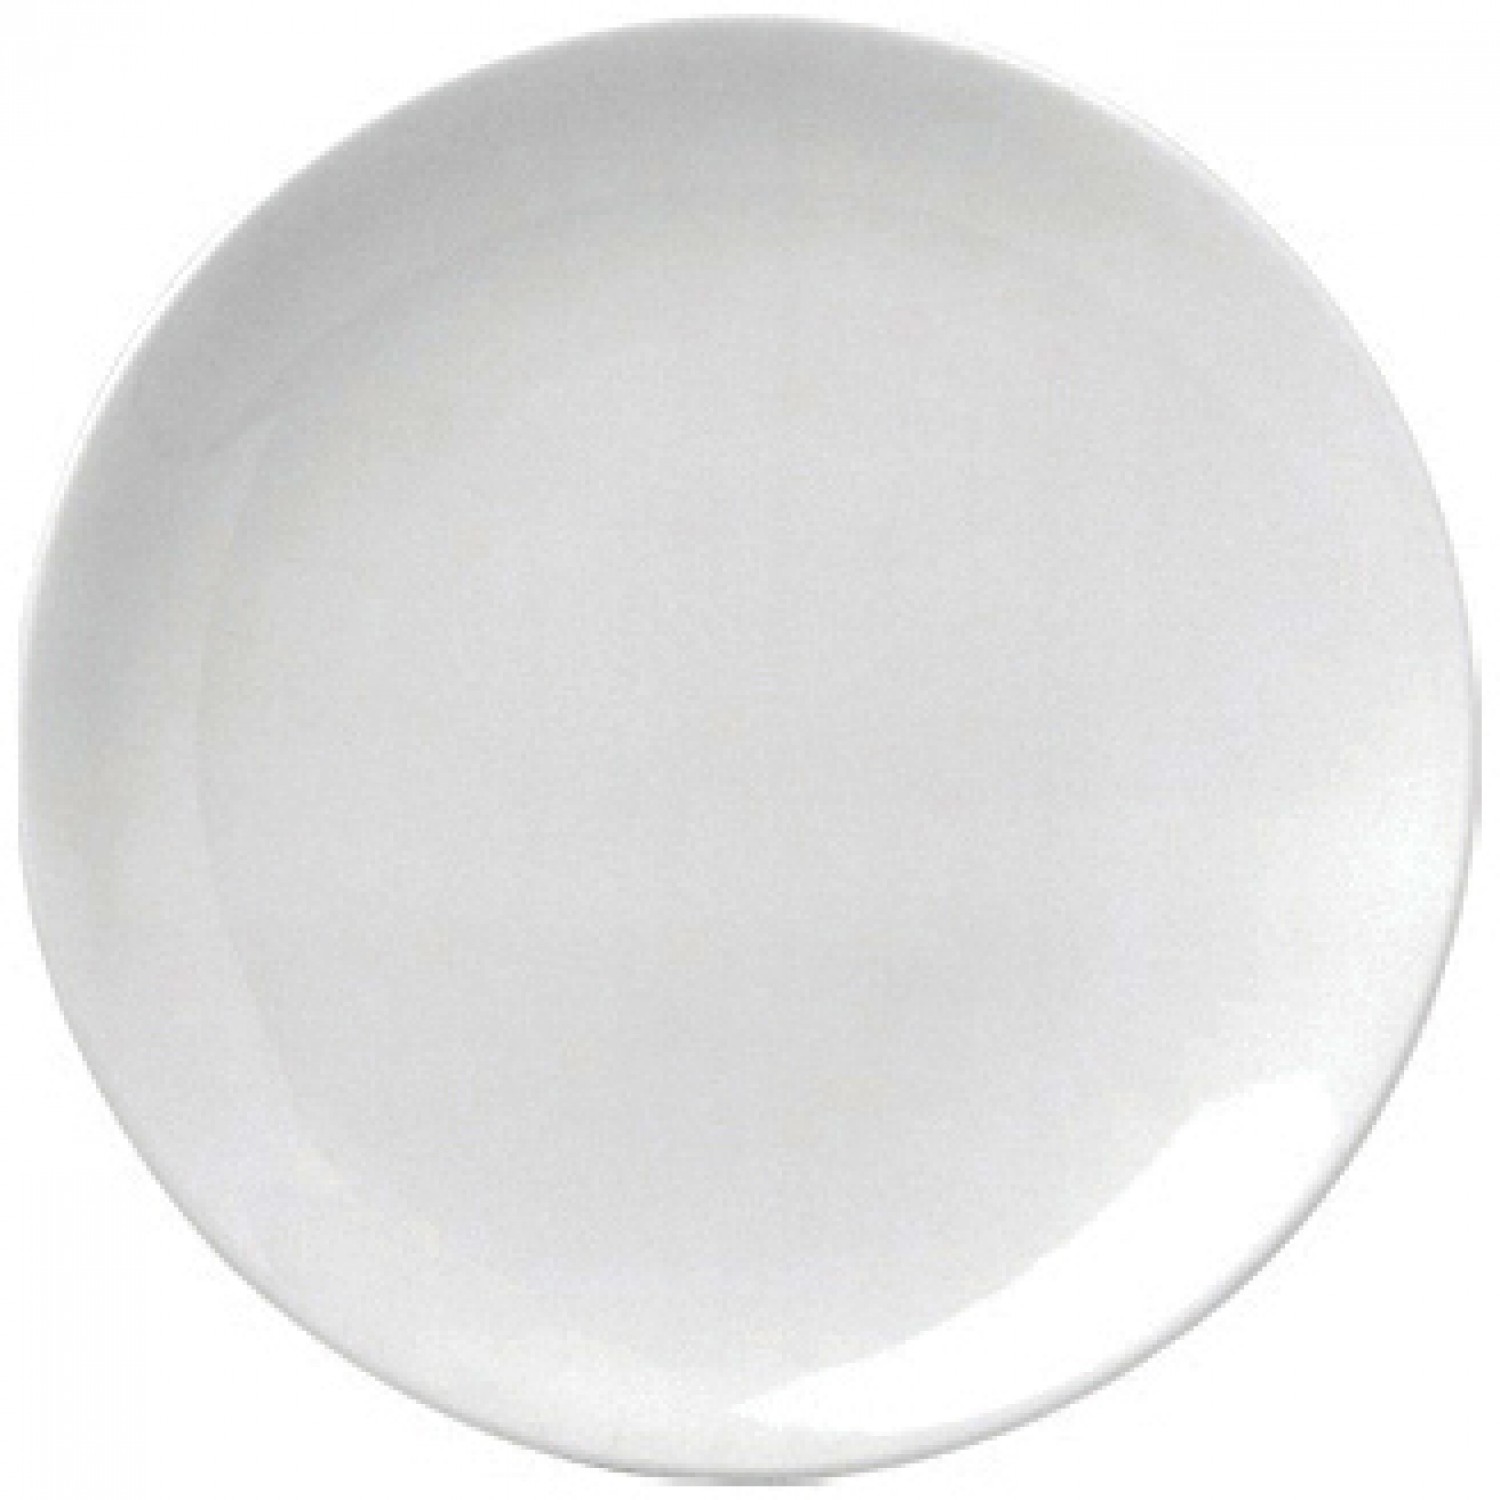 Πιάτο Ρηχό Στρογγυλό Coupe 17cm Άσπρο Πορσελάνης "ΕΟ" Gural 52.84002